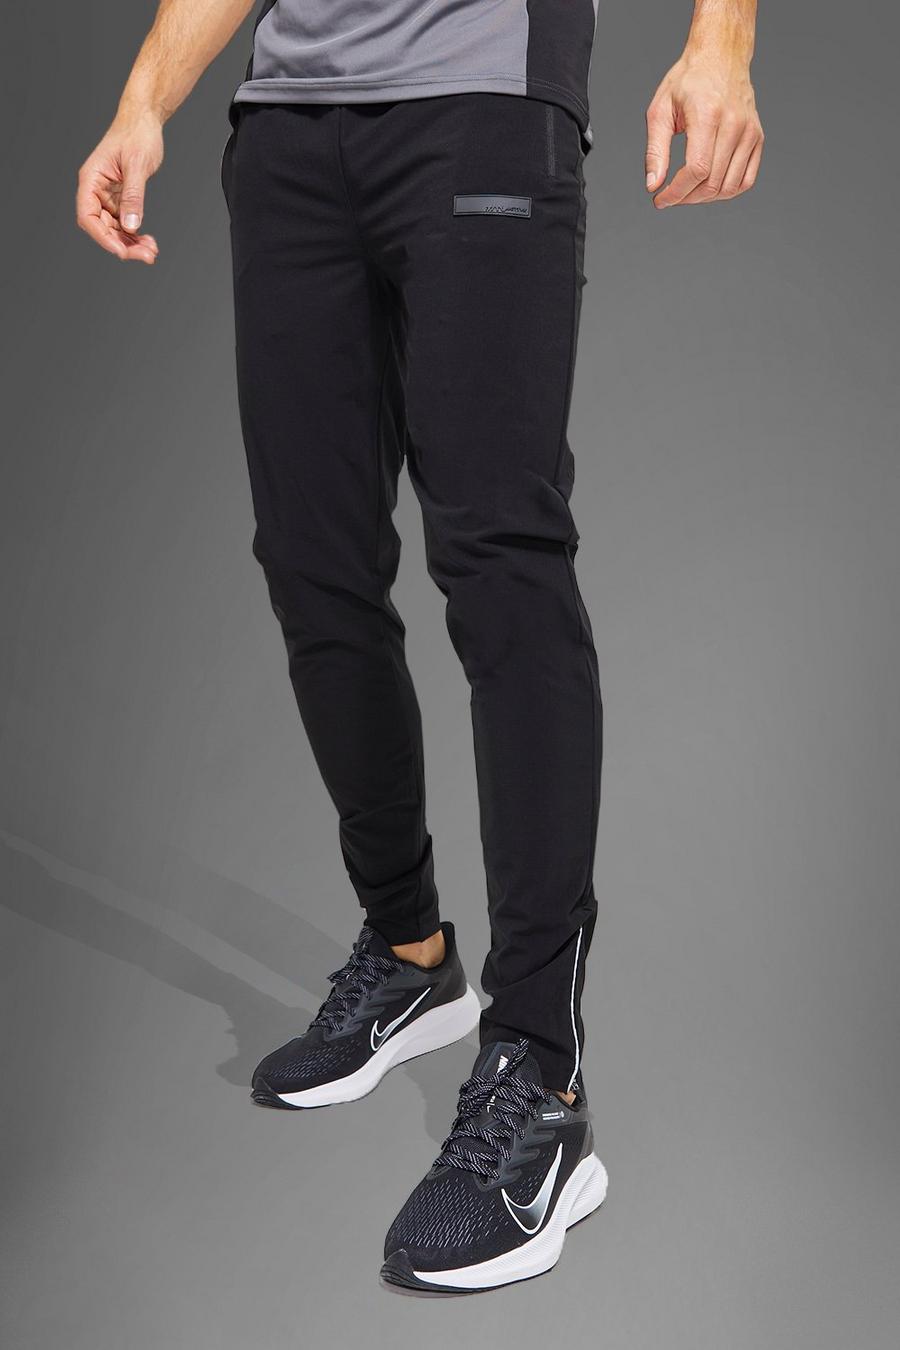 Pantalón deportivo Tall MAN Active texturizado, Black negro